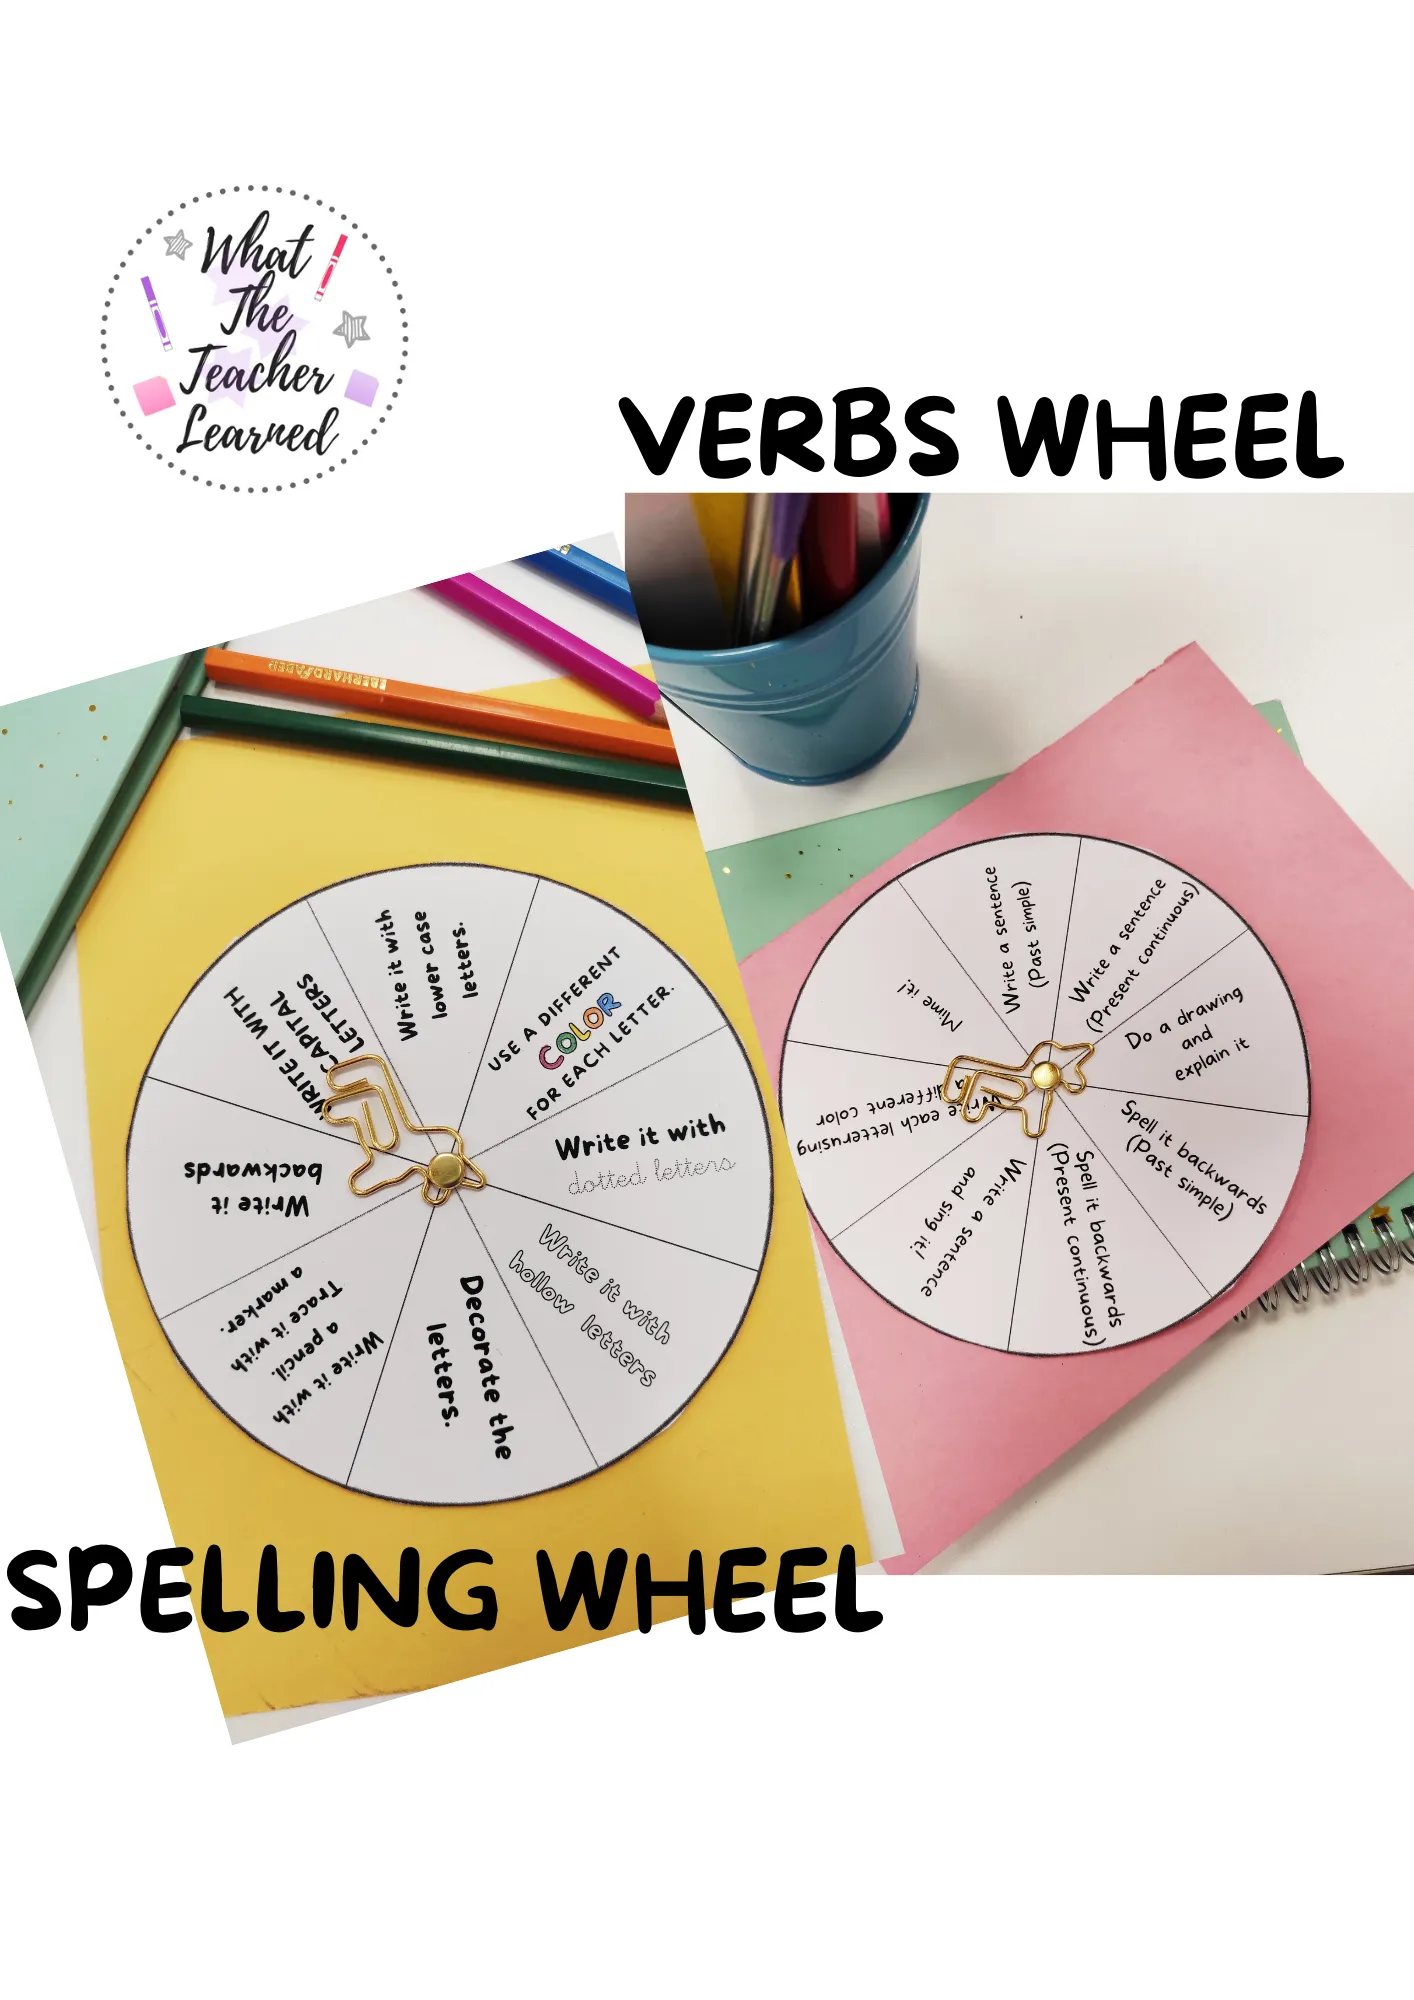 Spelling Wheel and Verbs Wheel